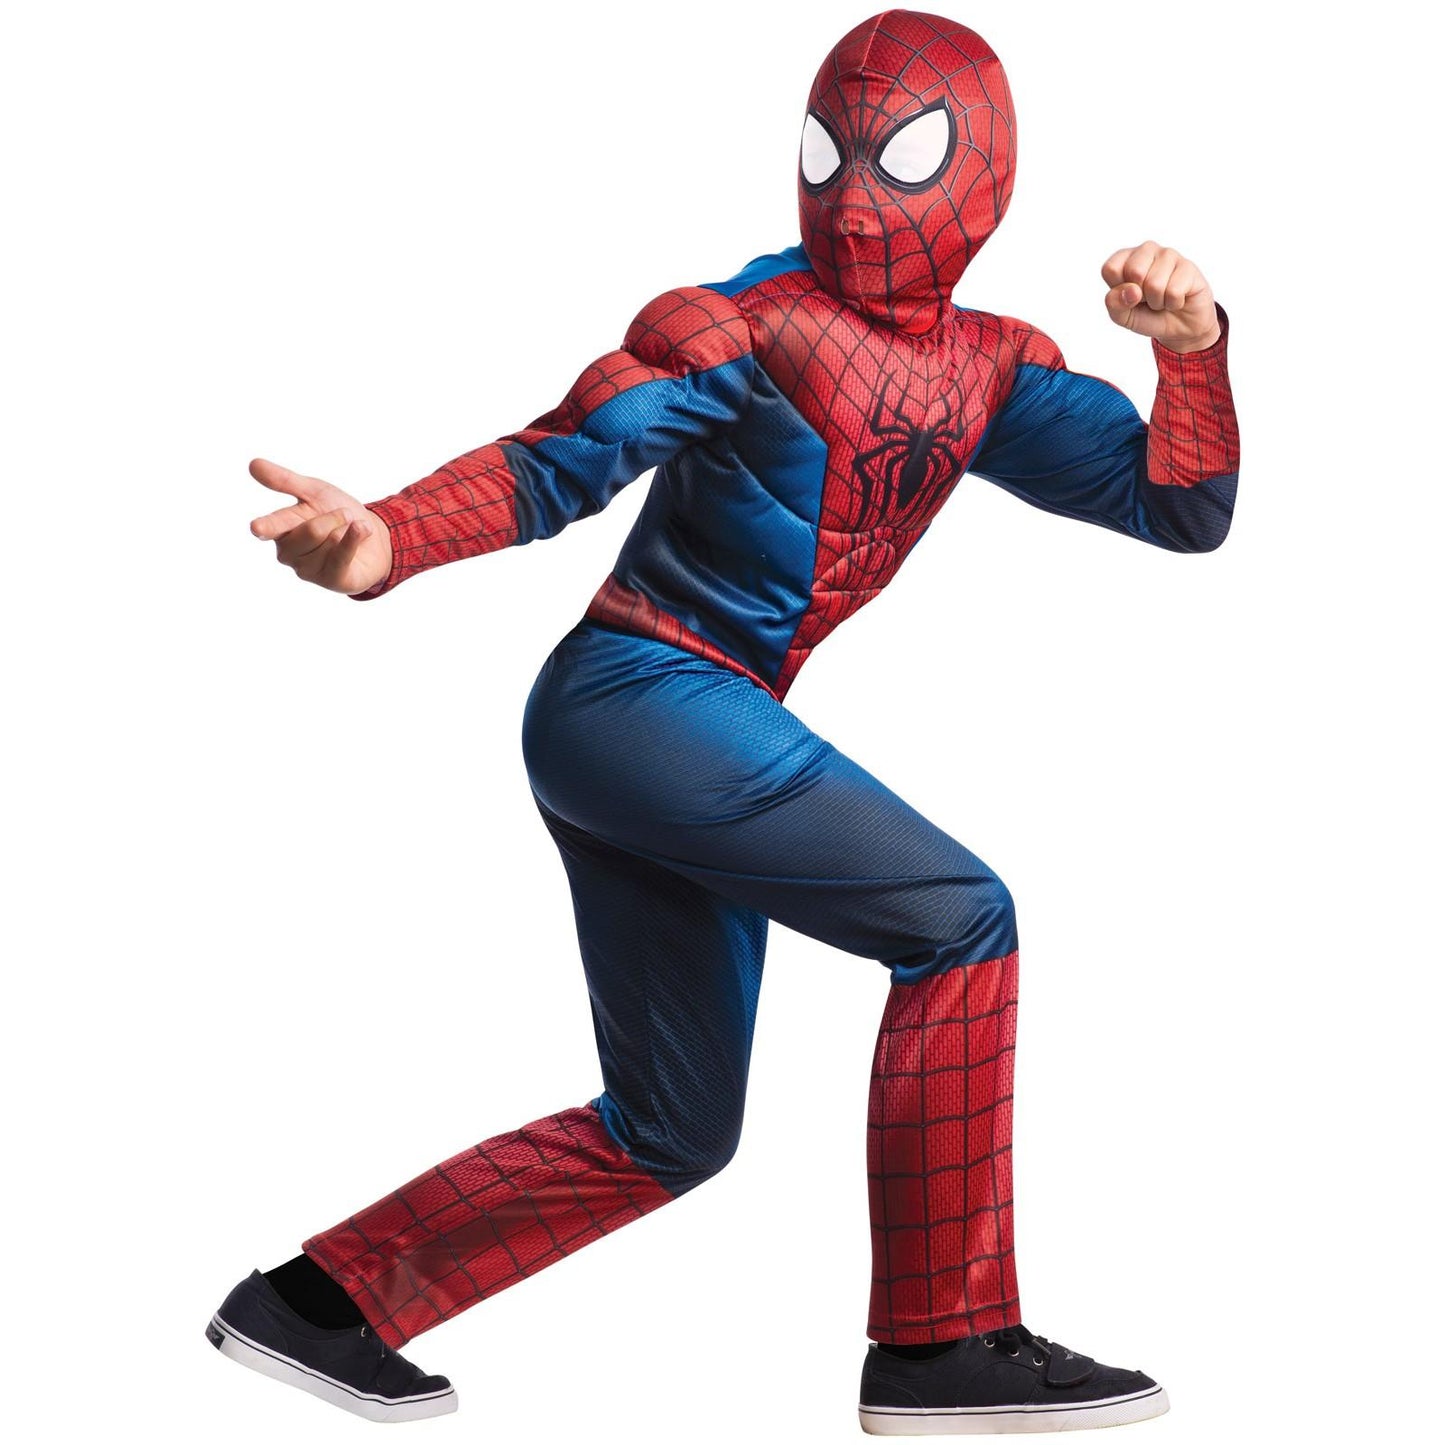 ΕΙΔΙΚΗ ΠΡΟΣΦΟΡΑ: Στολή SpiderMan με μυς, για παιδιά + Γάντι με εκτοξευτή και 2 βέλη